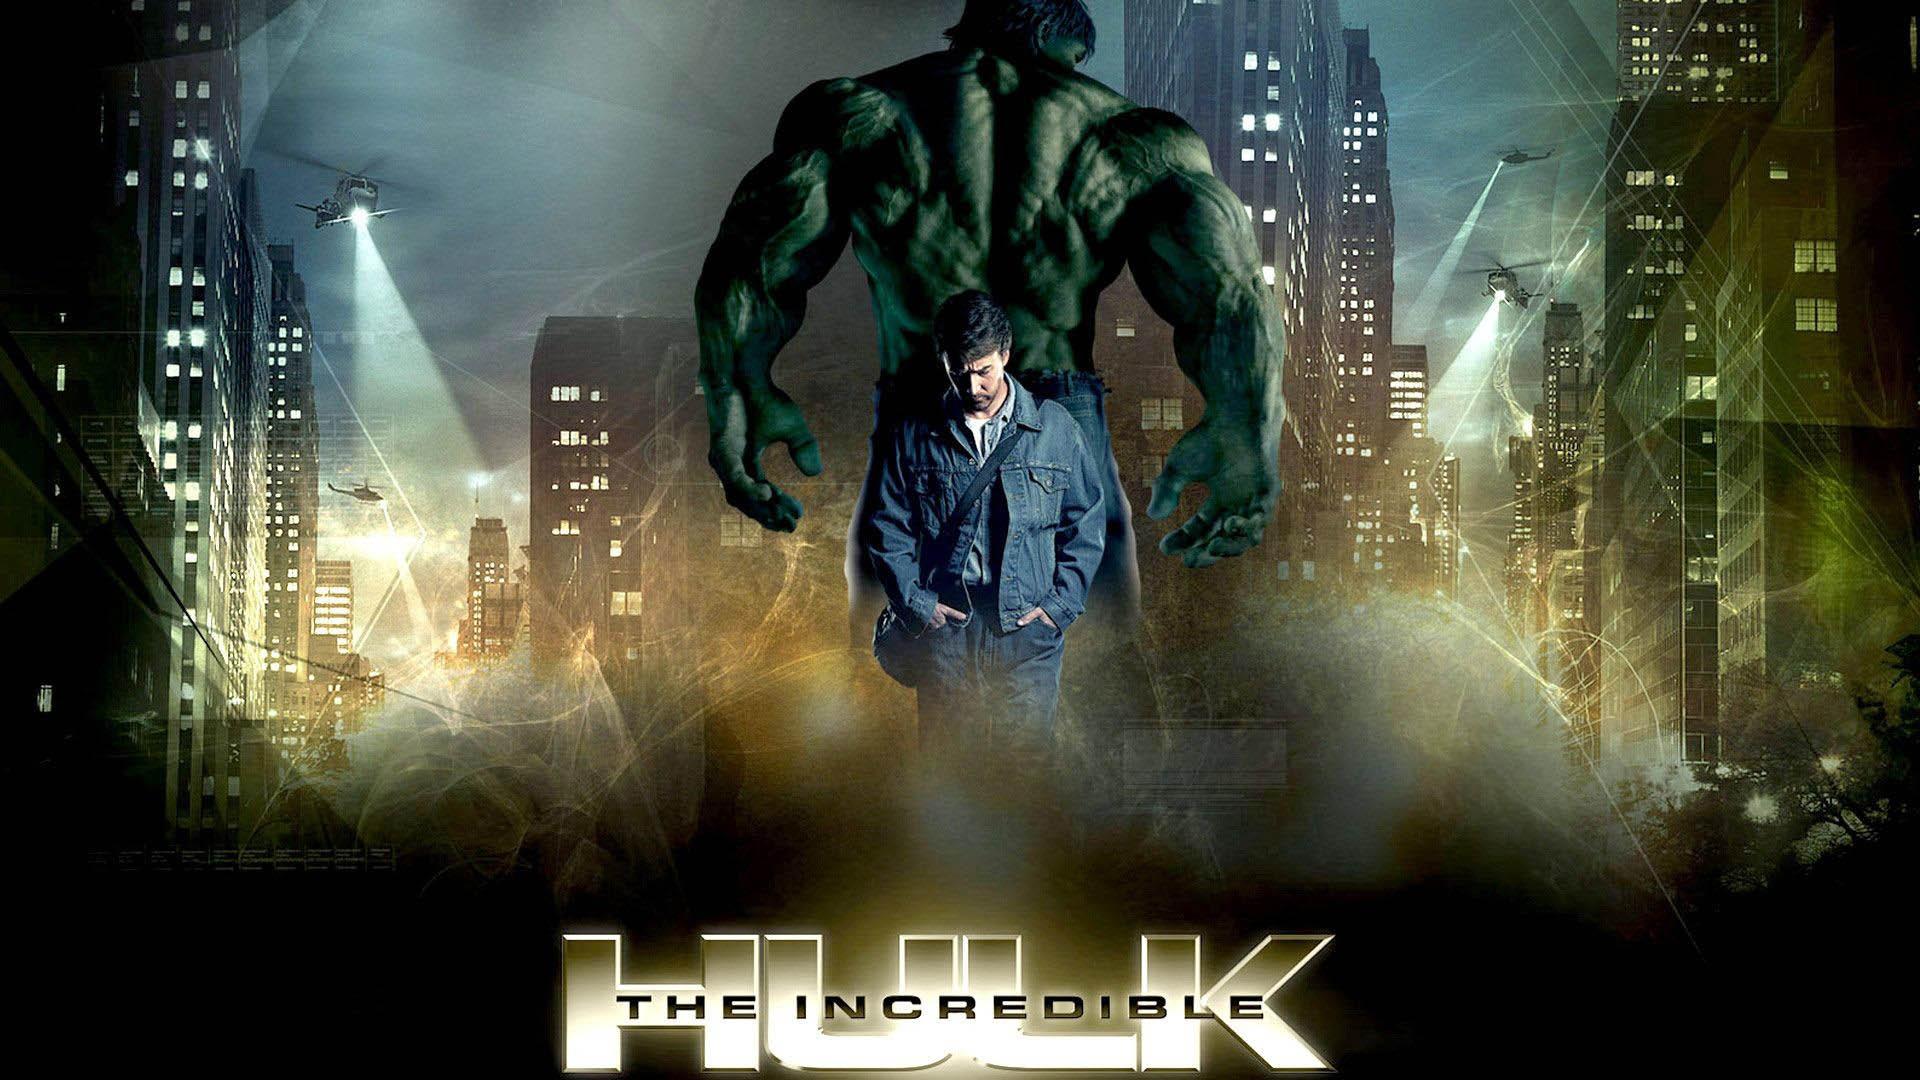 بروس بنر و هالک در فیلم The Incredible Hulk